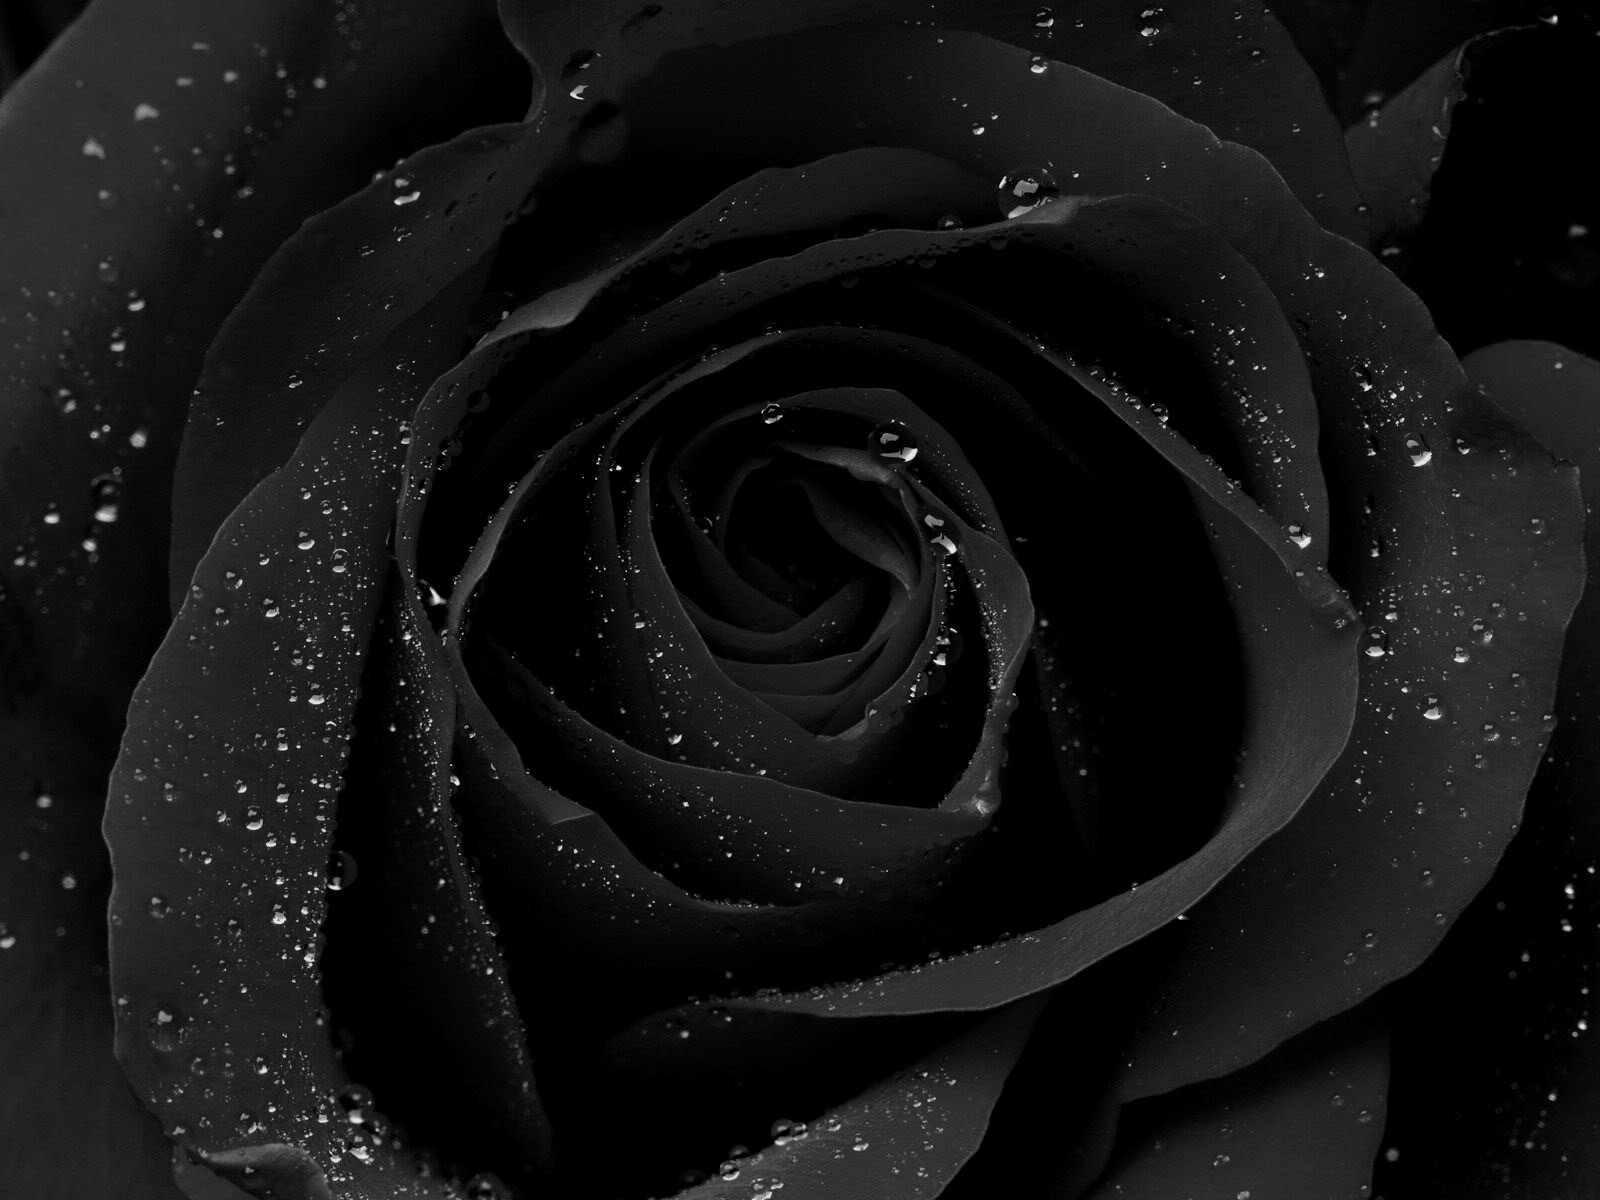 78+] Wallpaper Black Rose - WallpaperSafari